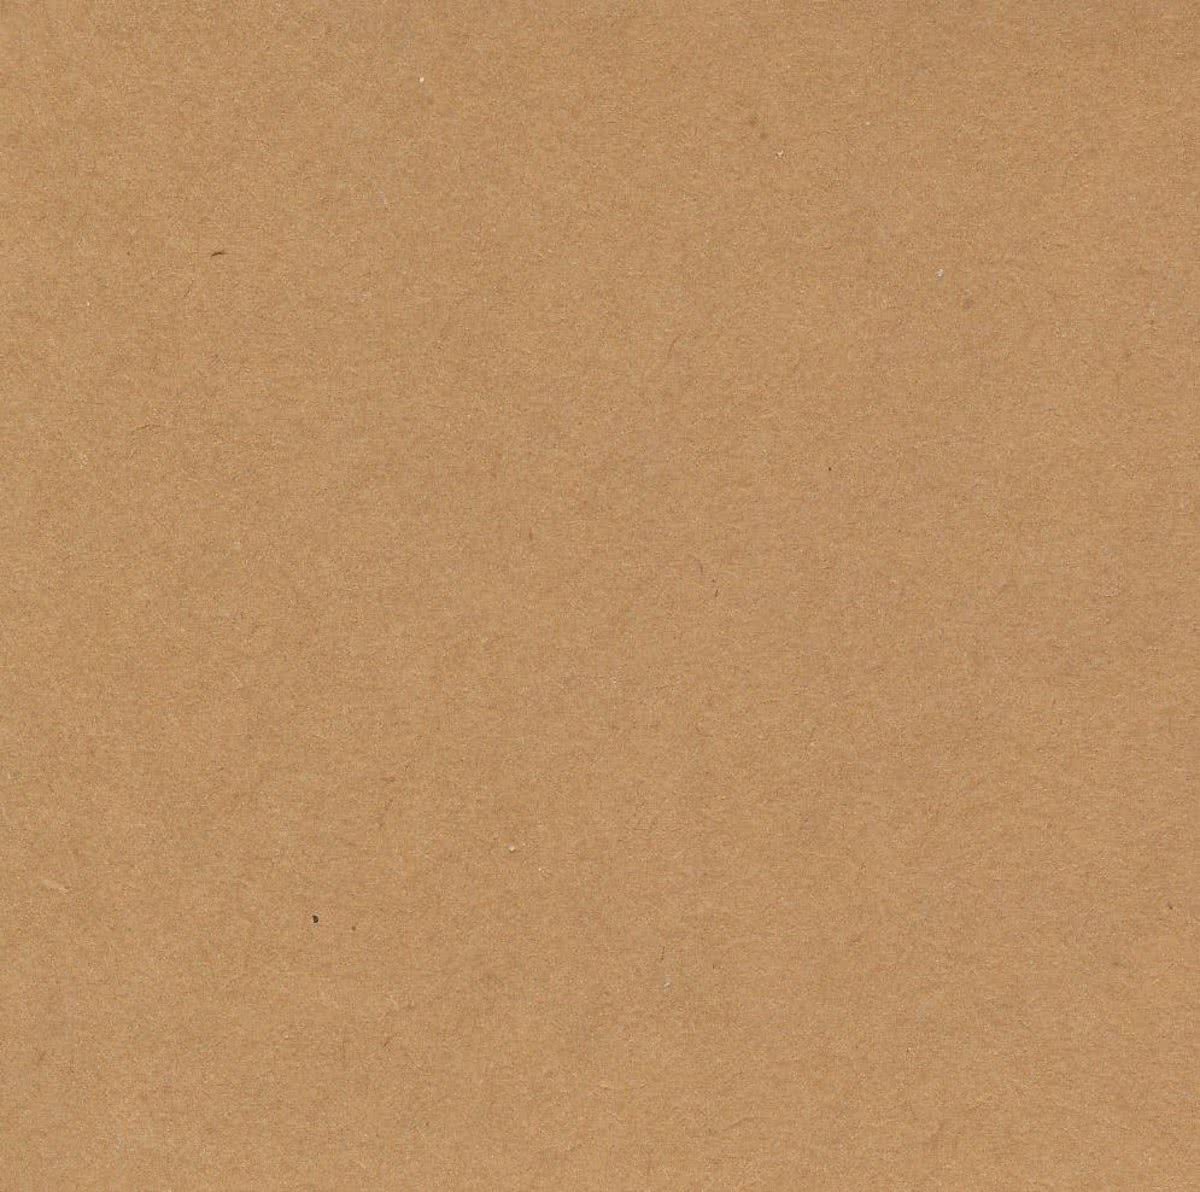 Pakpapier - Cadeaupapier - Inpakpapier - Bruin - 500 x 70 cm - 2 rollen